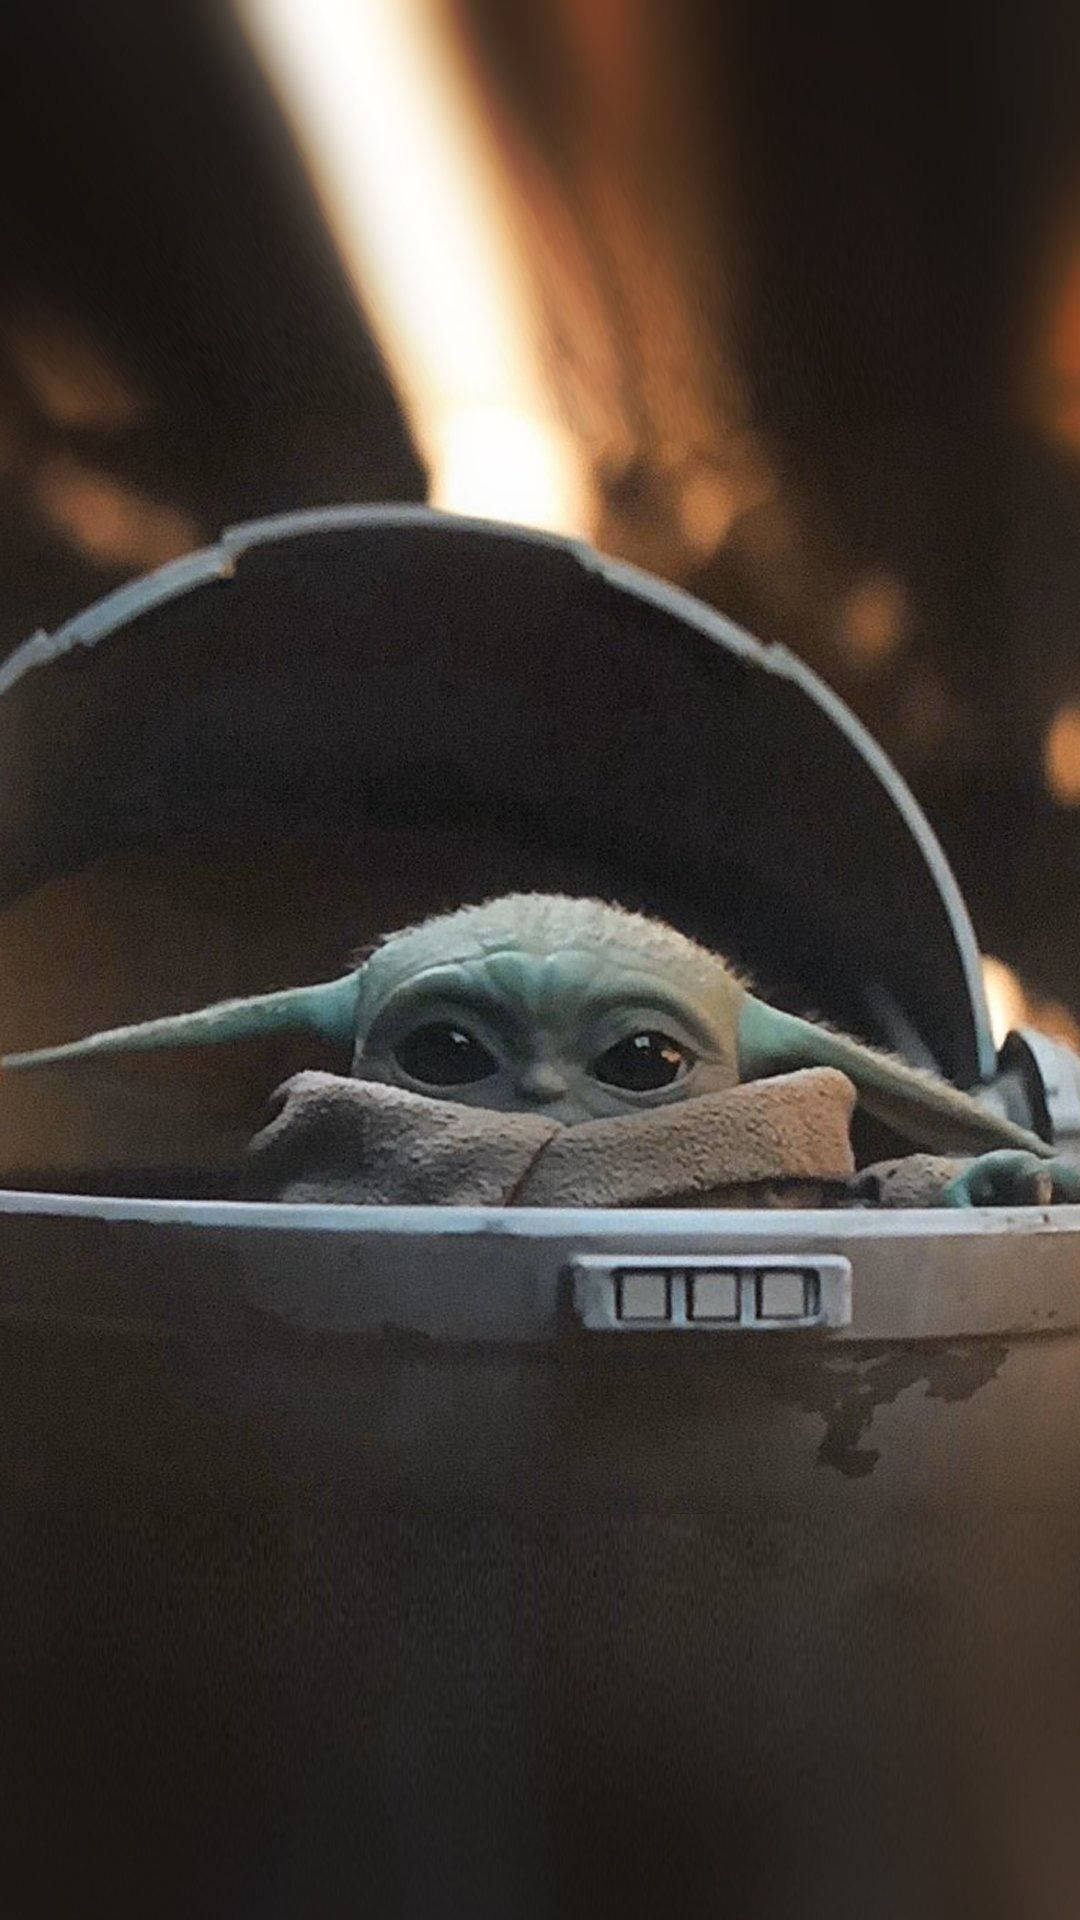 Sphere Capsule Of Baby Yoda